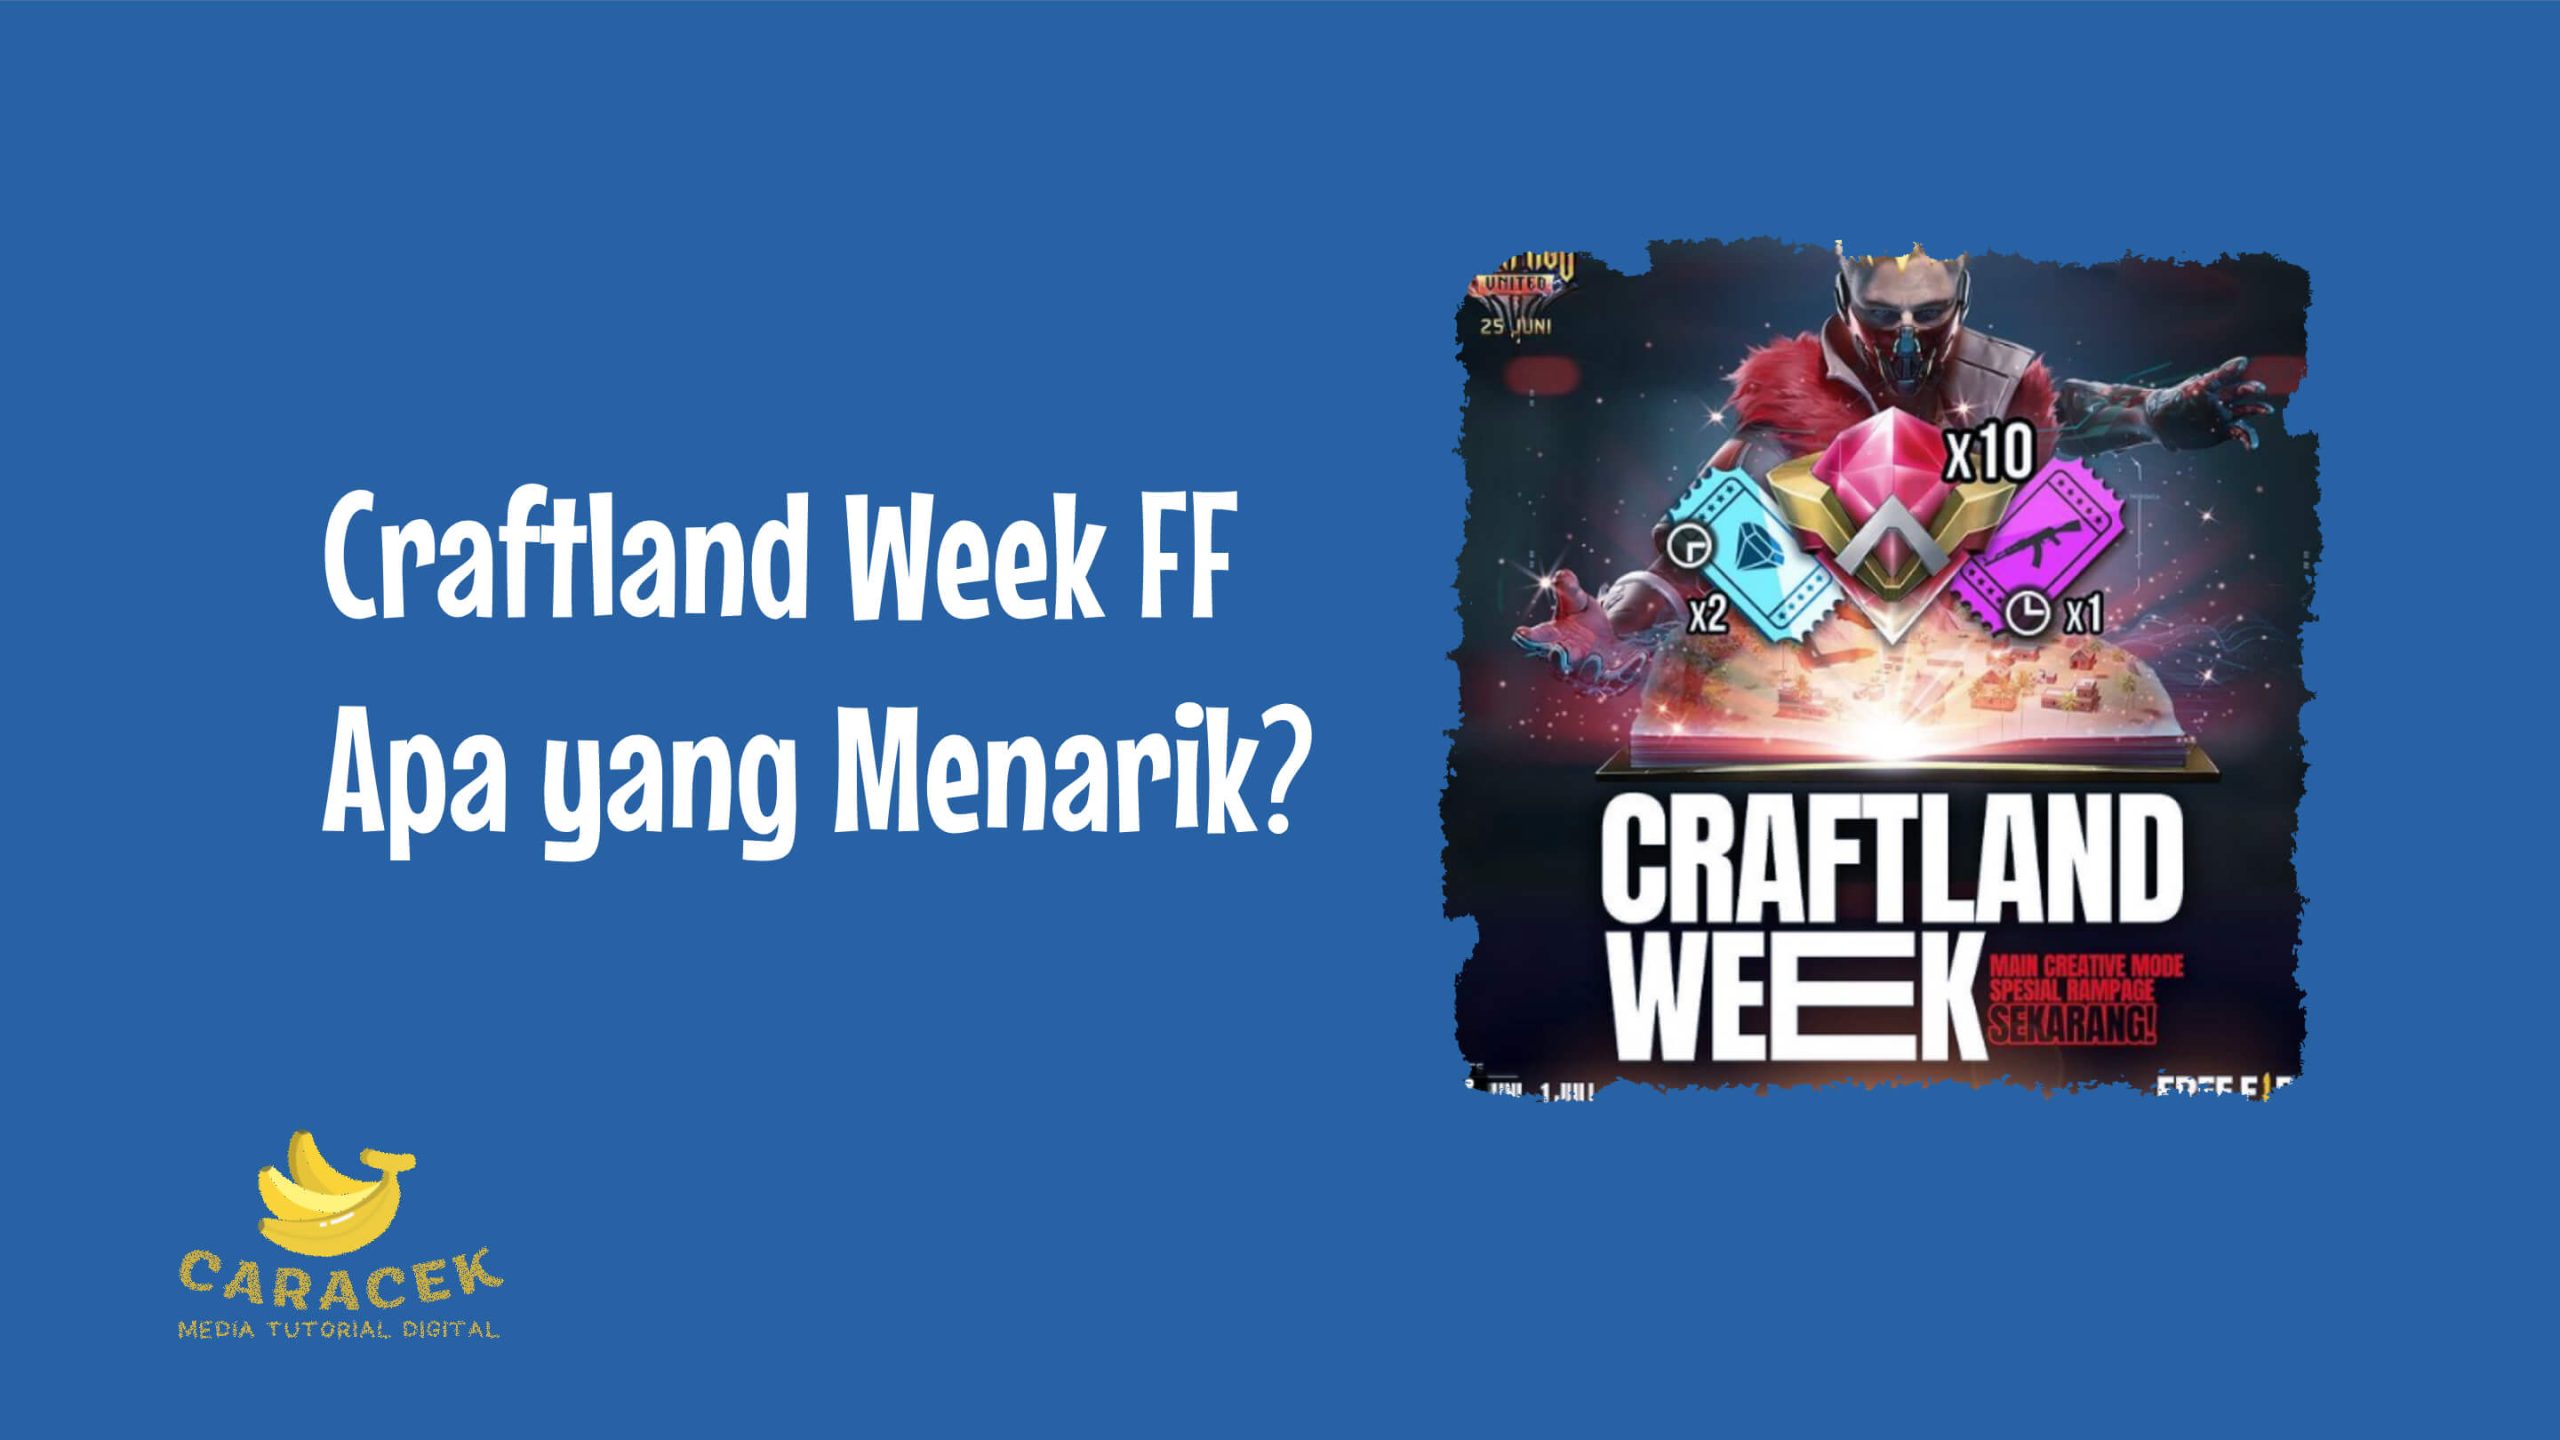 Craftland Week FF